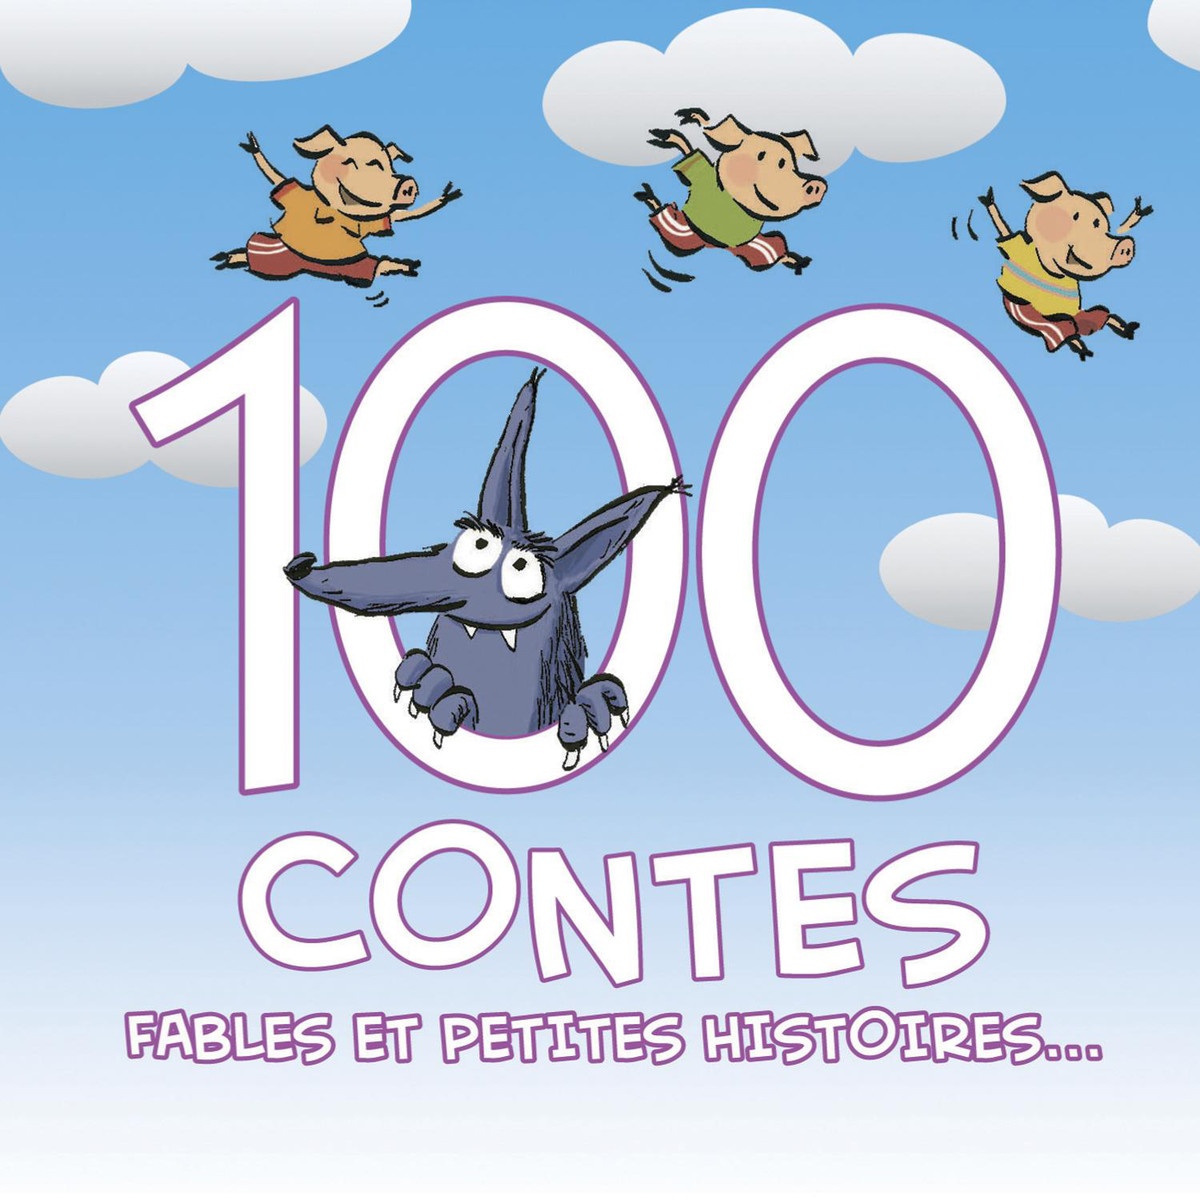 100 Contes, Fables Et Petites Histoires